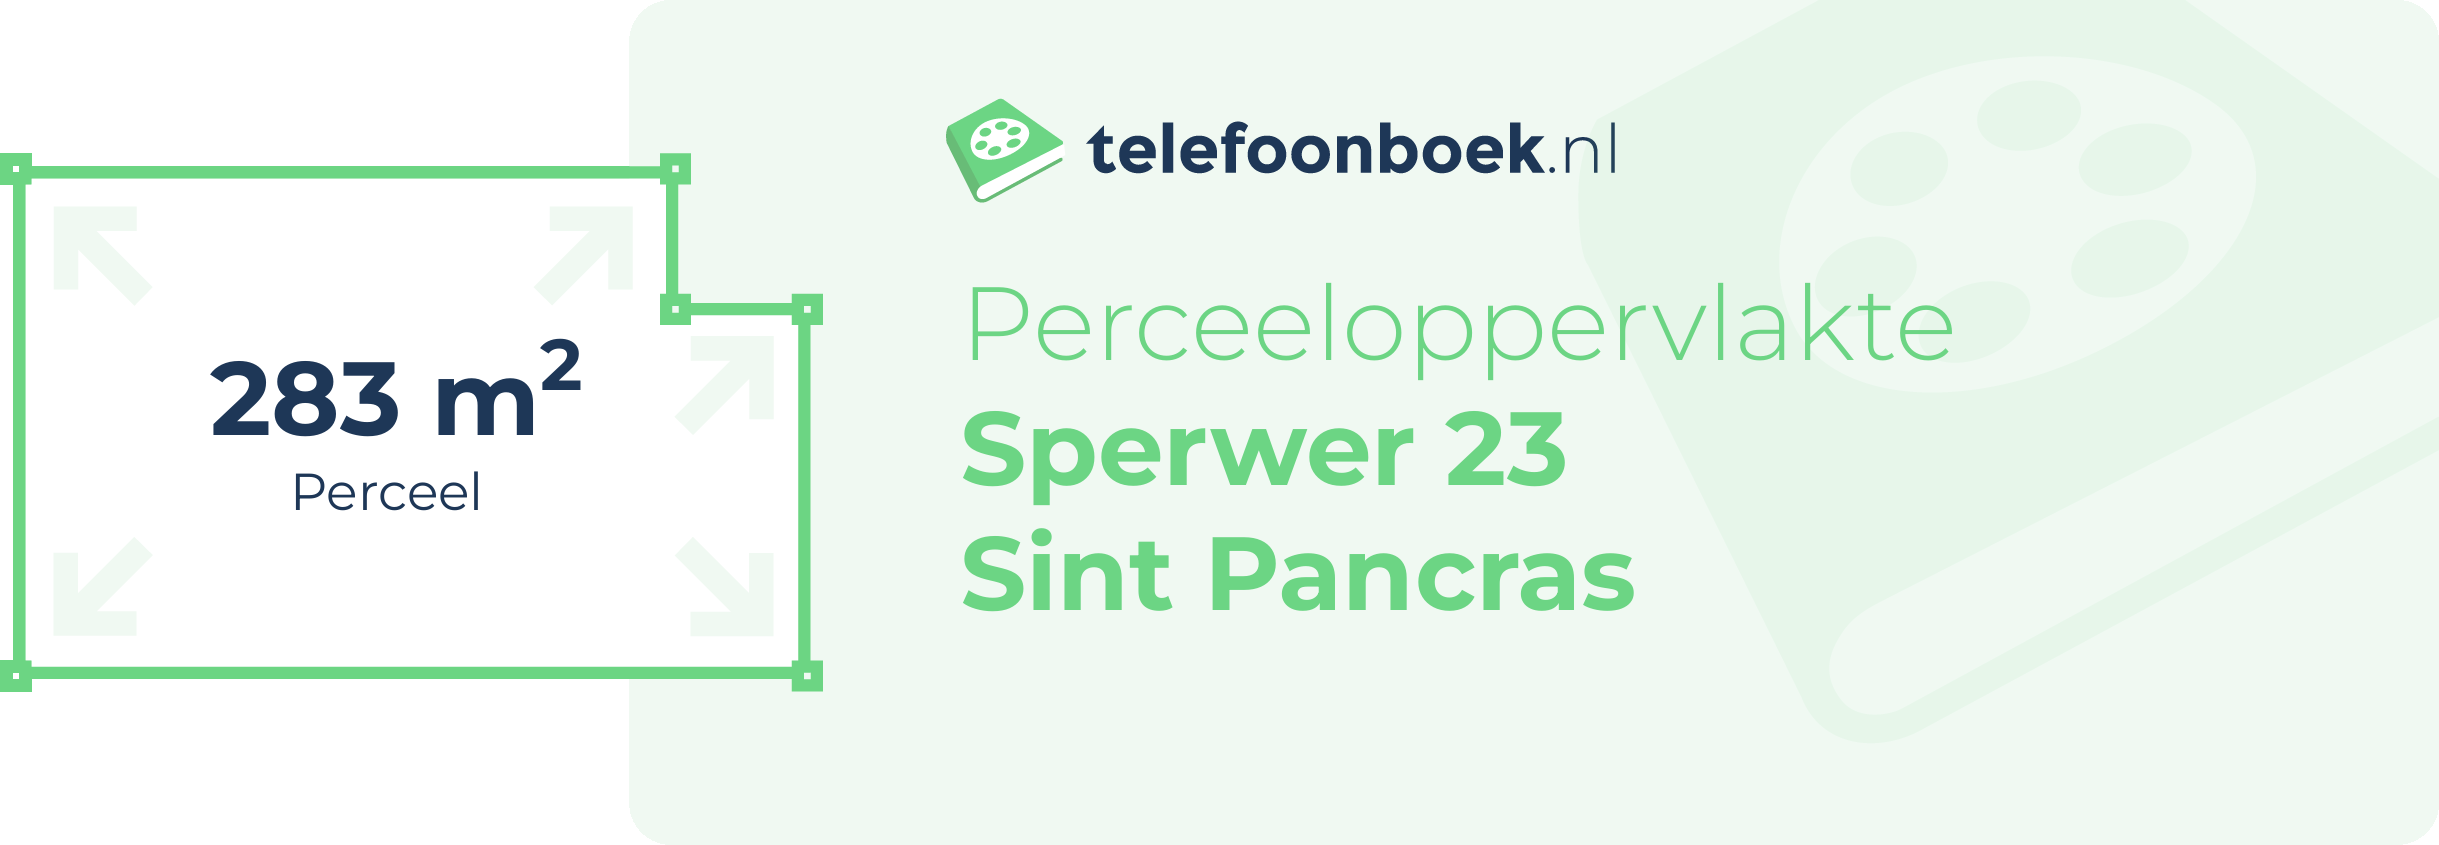 Perceeloppervlakte Sperwer 23 Sint Pancras